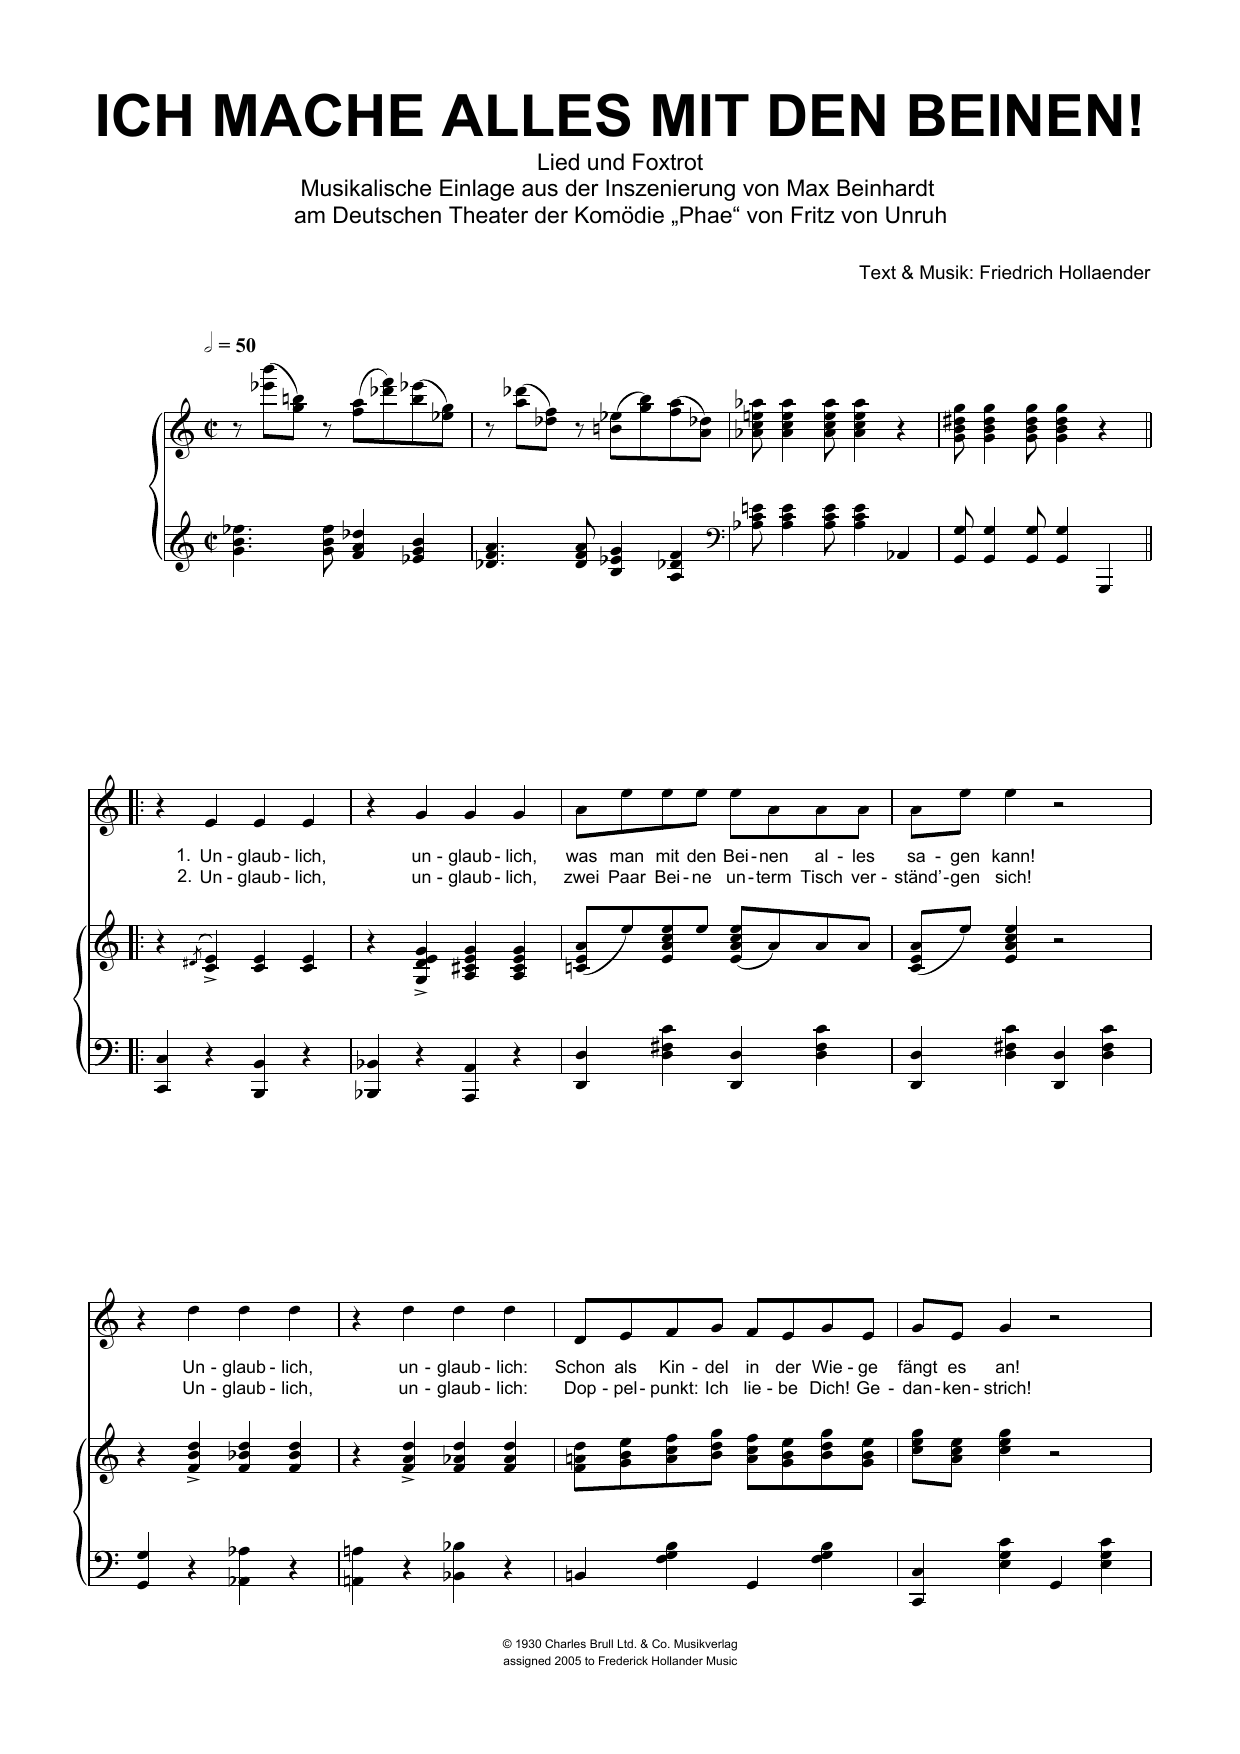 Friedrich Hollaender Ich Mache Alles Mit Den Beinen! Sheet Music Notes & Chords for Piano & Vocal - Download or Print PDF